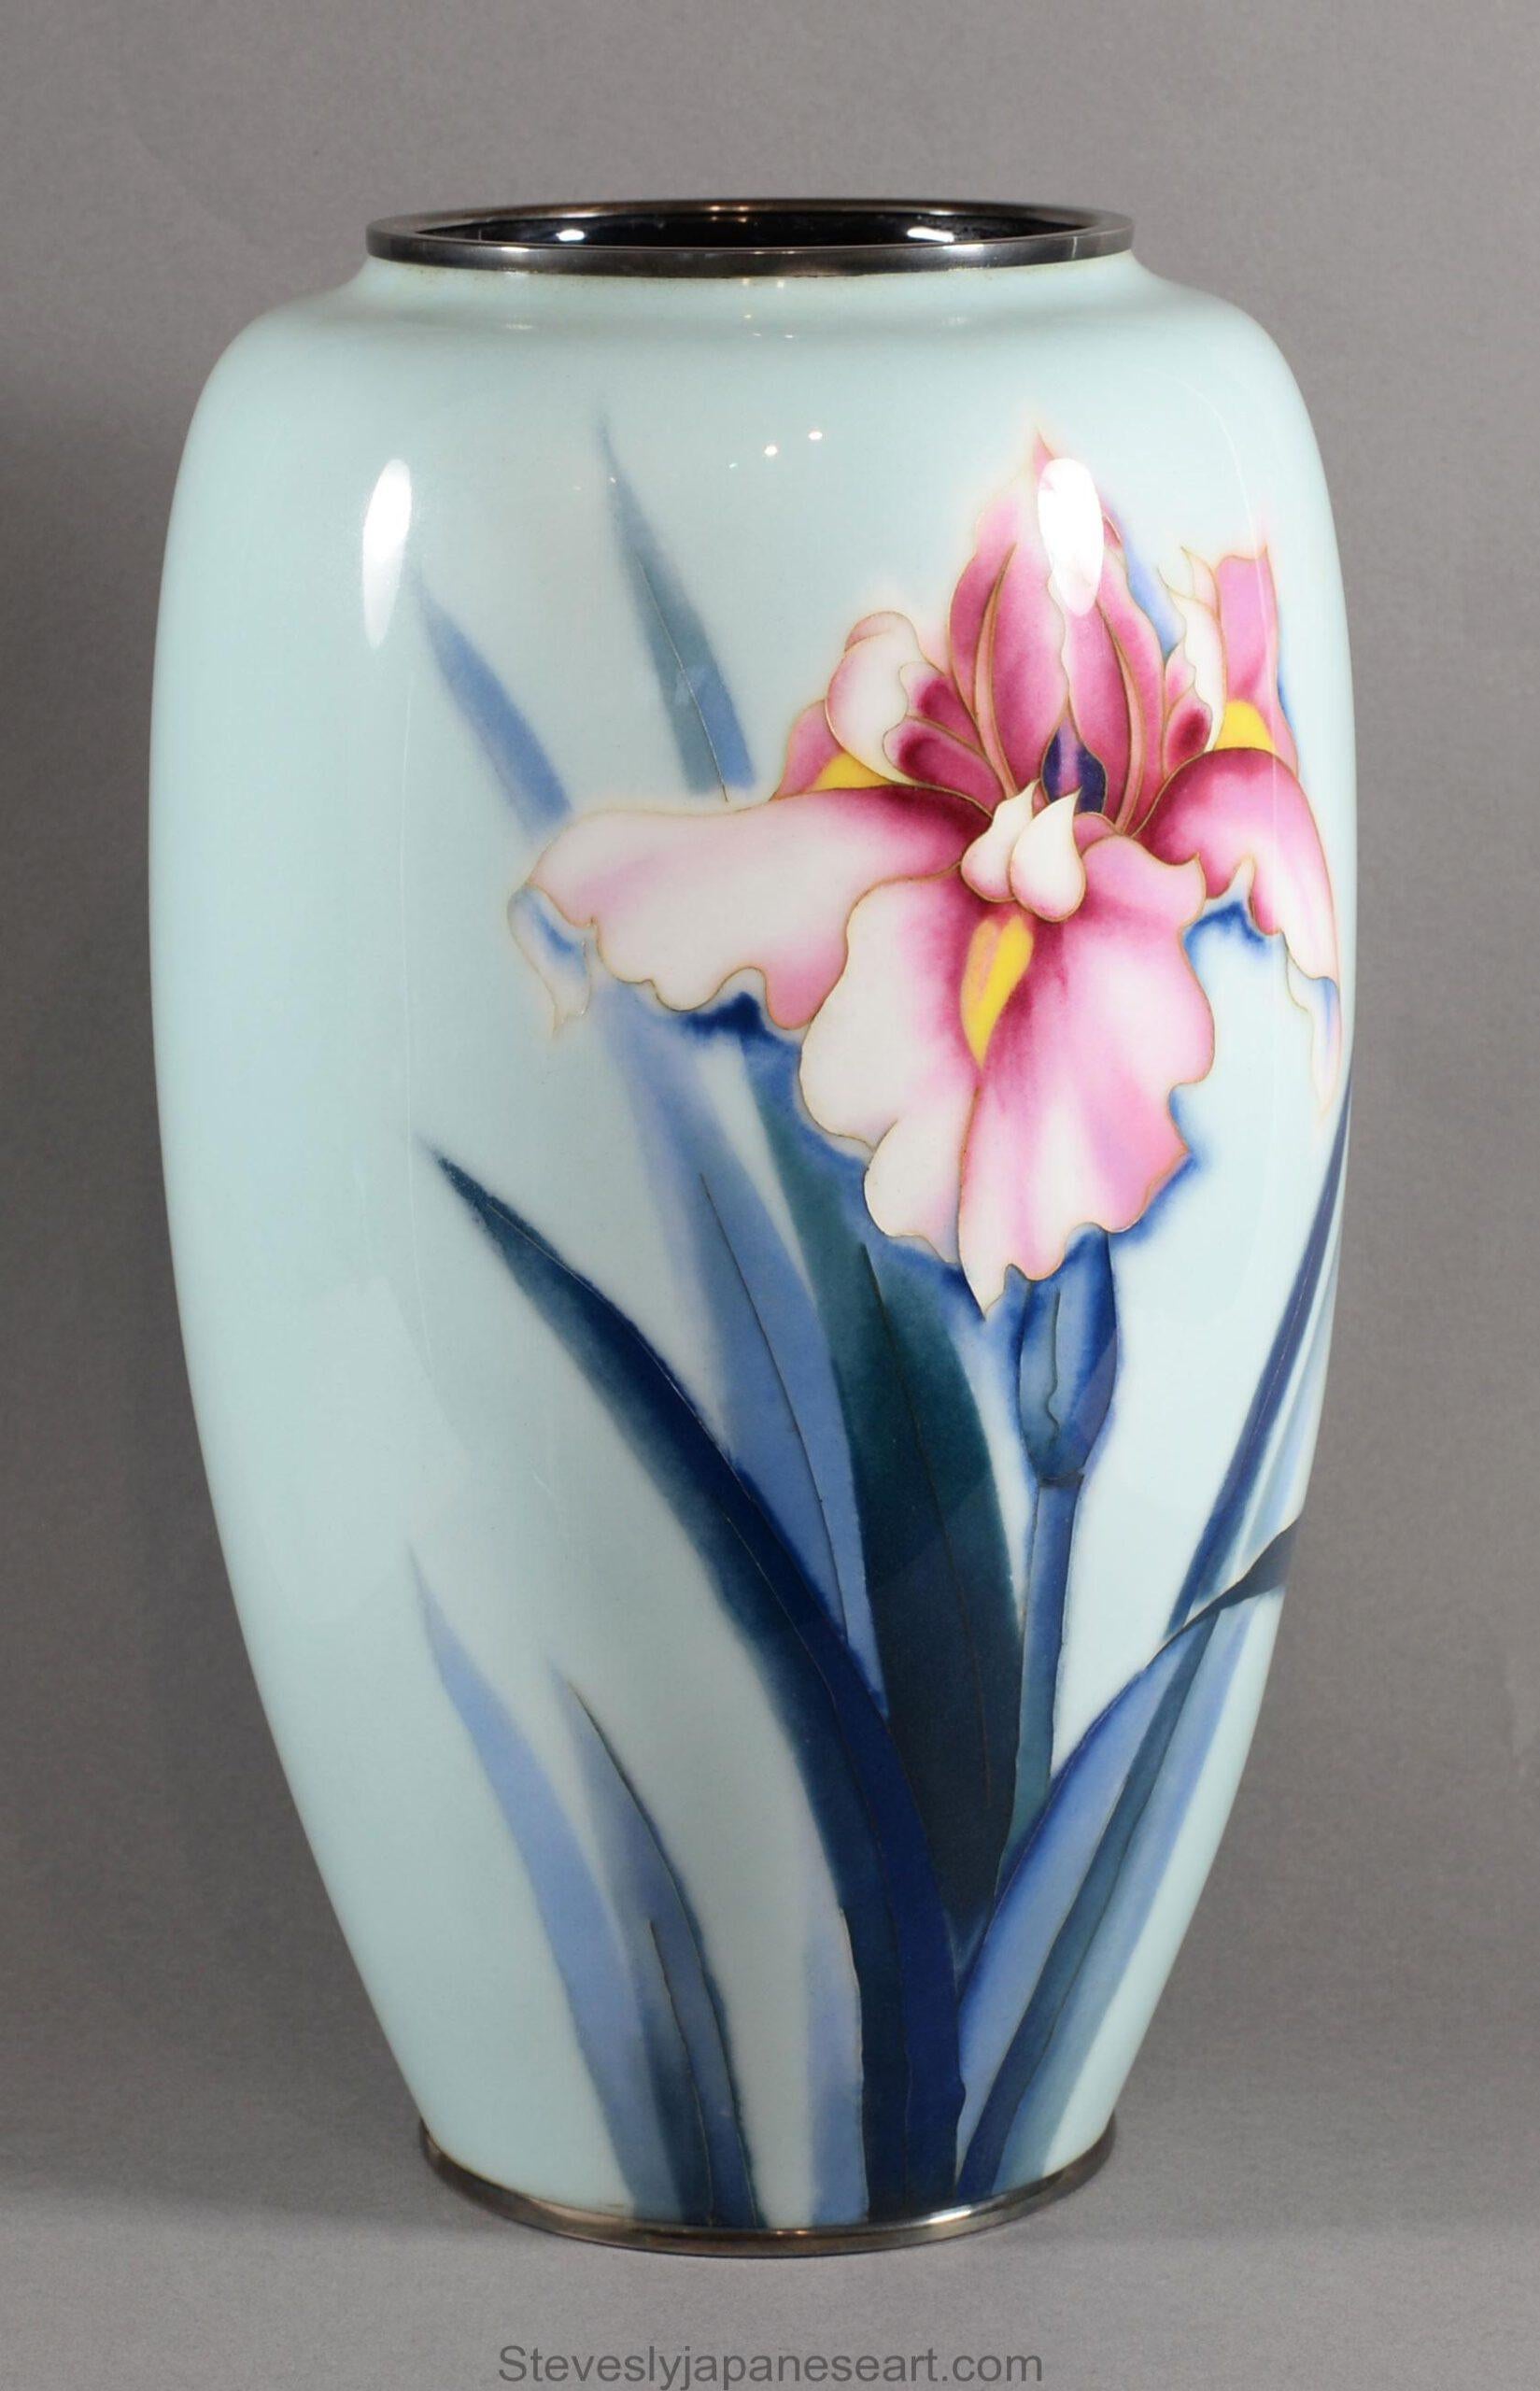 Dans le cadre de notre collection d'œuvres d'art japonaises, nous sommes ravis d'offrir ce superbe vase en émail cloisonné du début du 20e siècle de la période Meiji/Taisho, vers 1920, de la très réputée société Ando Jubei. Ce grand vase conique est